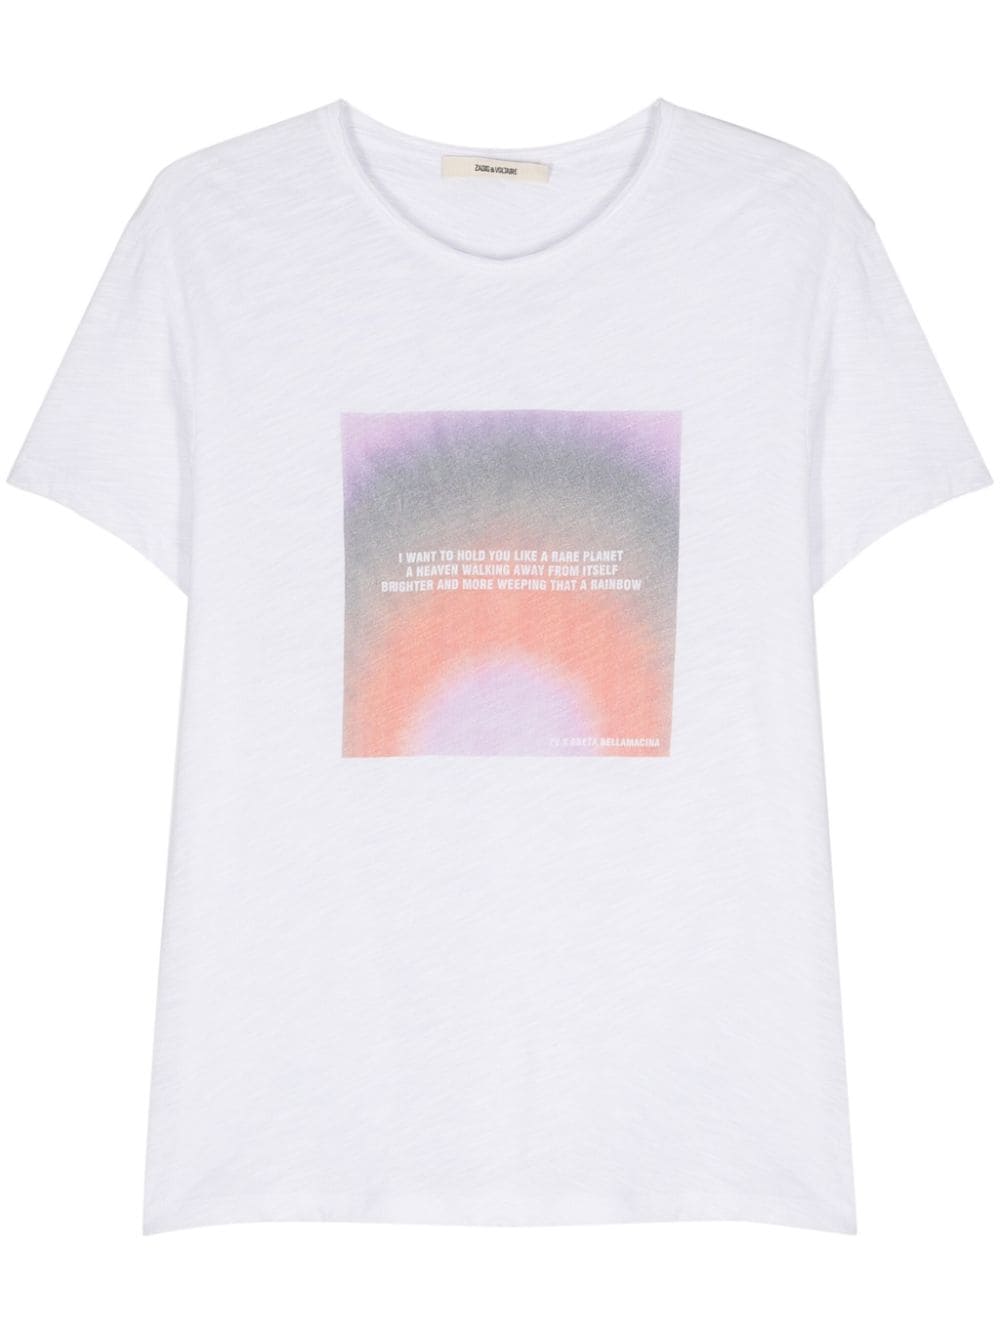 Zadig&Voltaire x Greta Bellamacina Toby T-Shirt mit Foto-Print - Weiß von Zadig&Voltaire